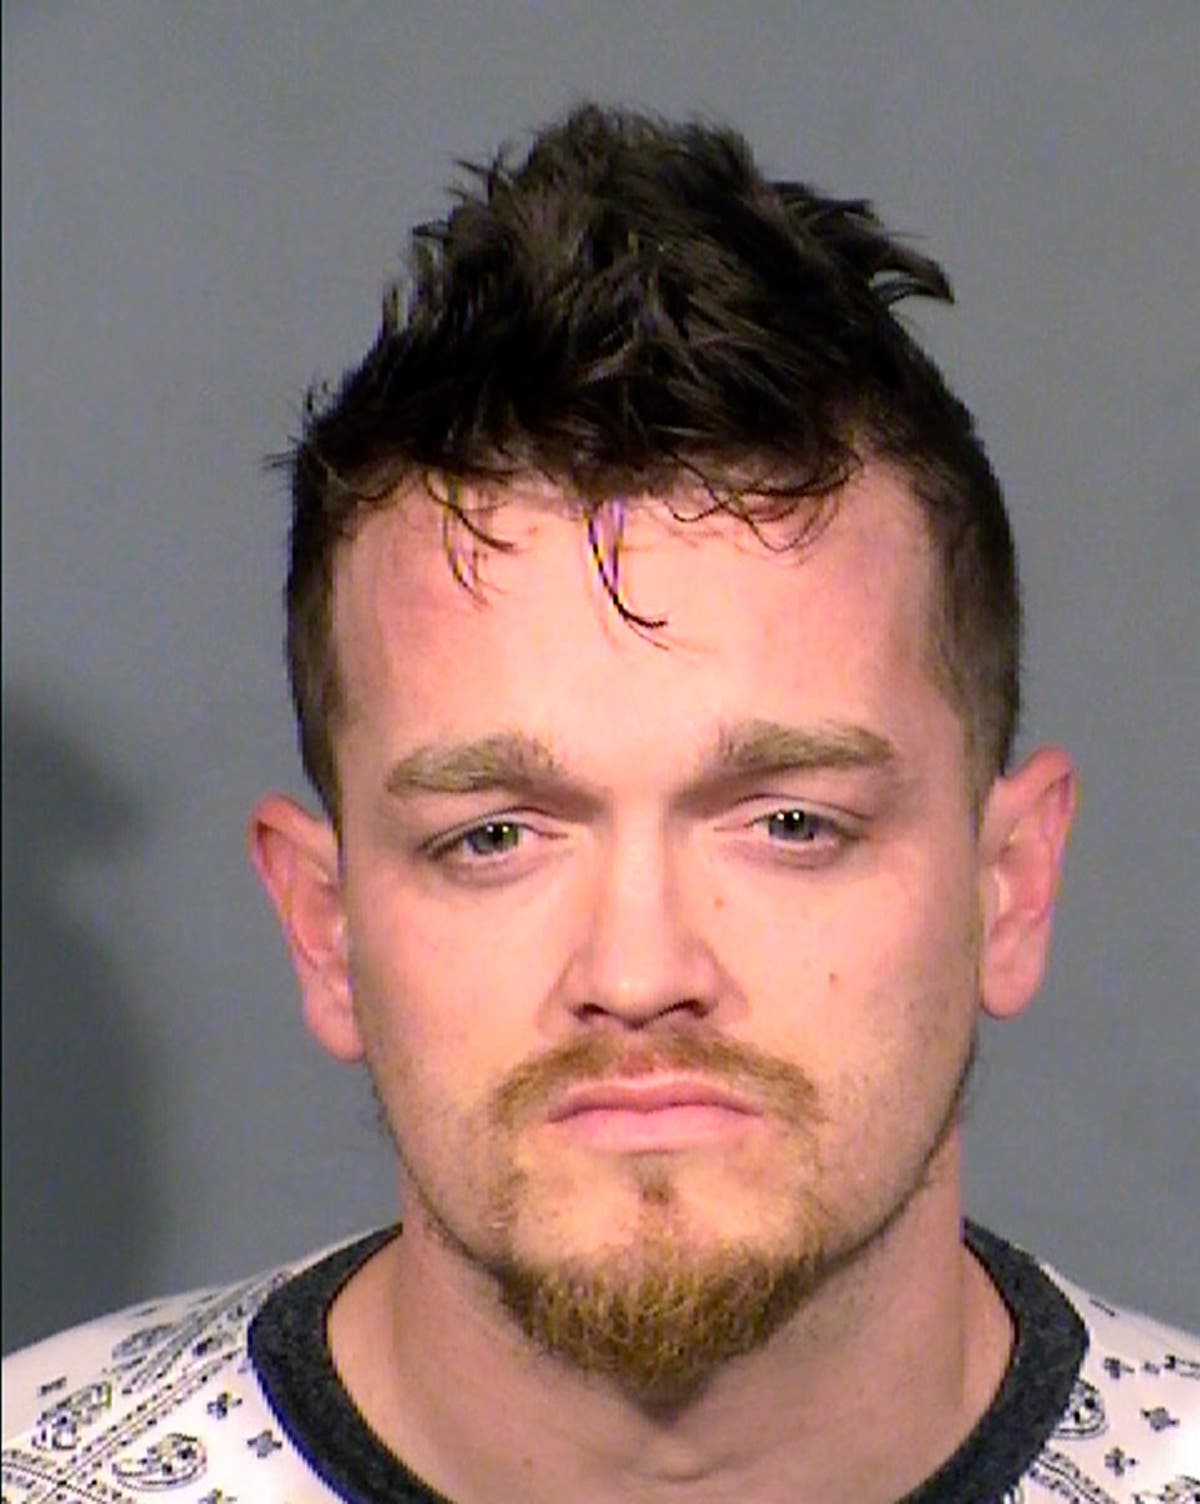 Vegas man pleads not guilty in boy's body in freezer case